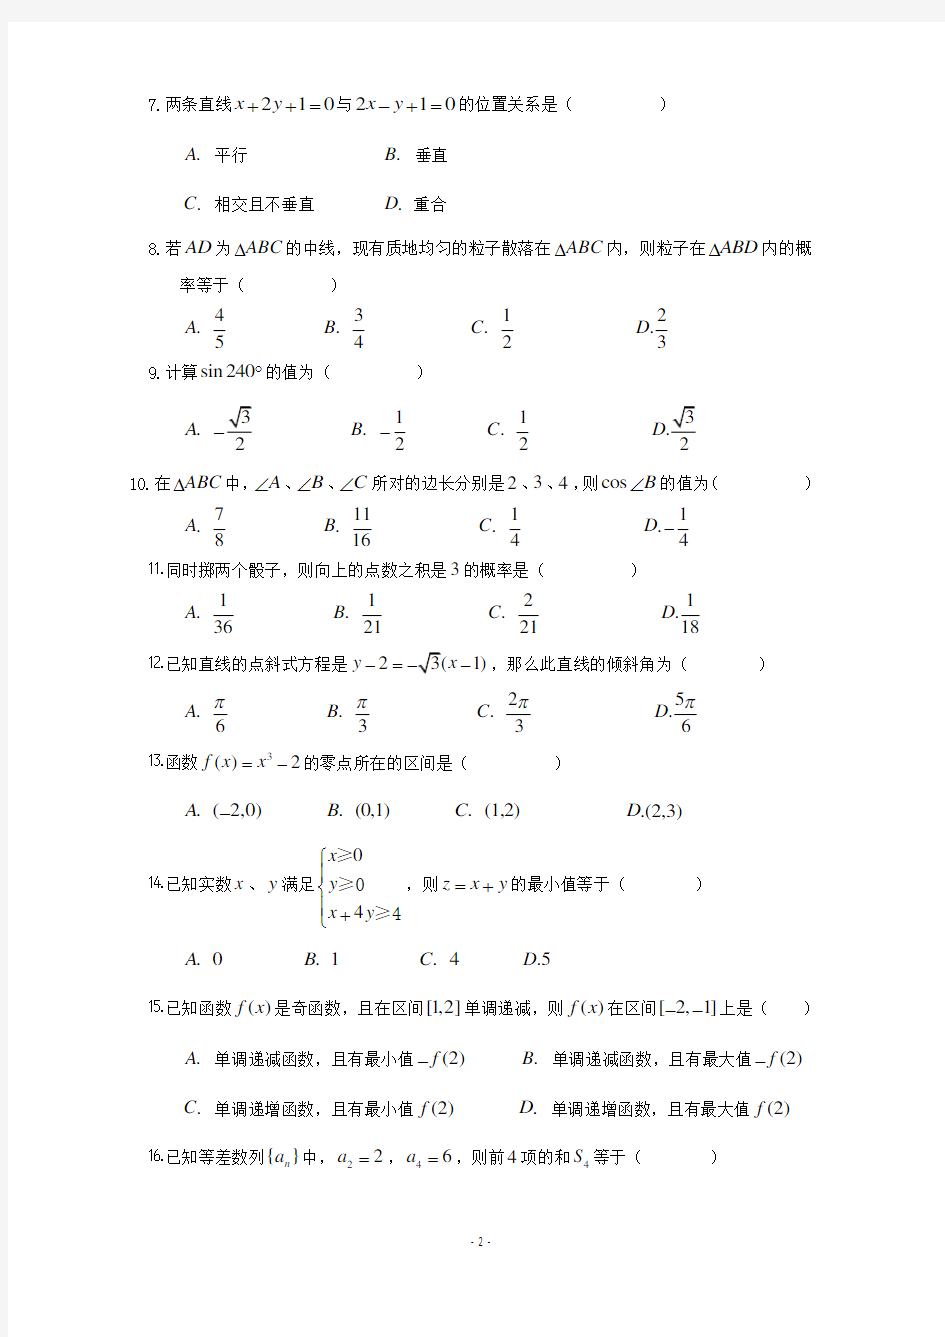 普通高中数学学业水平考试试卷.pdf